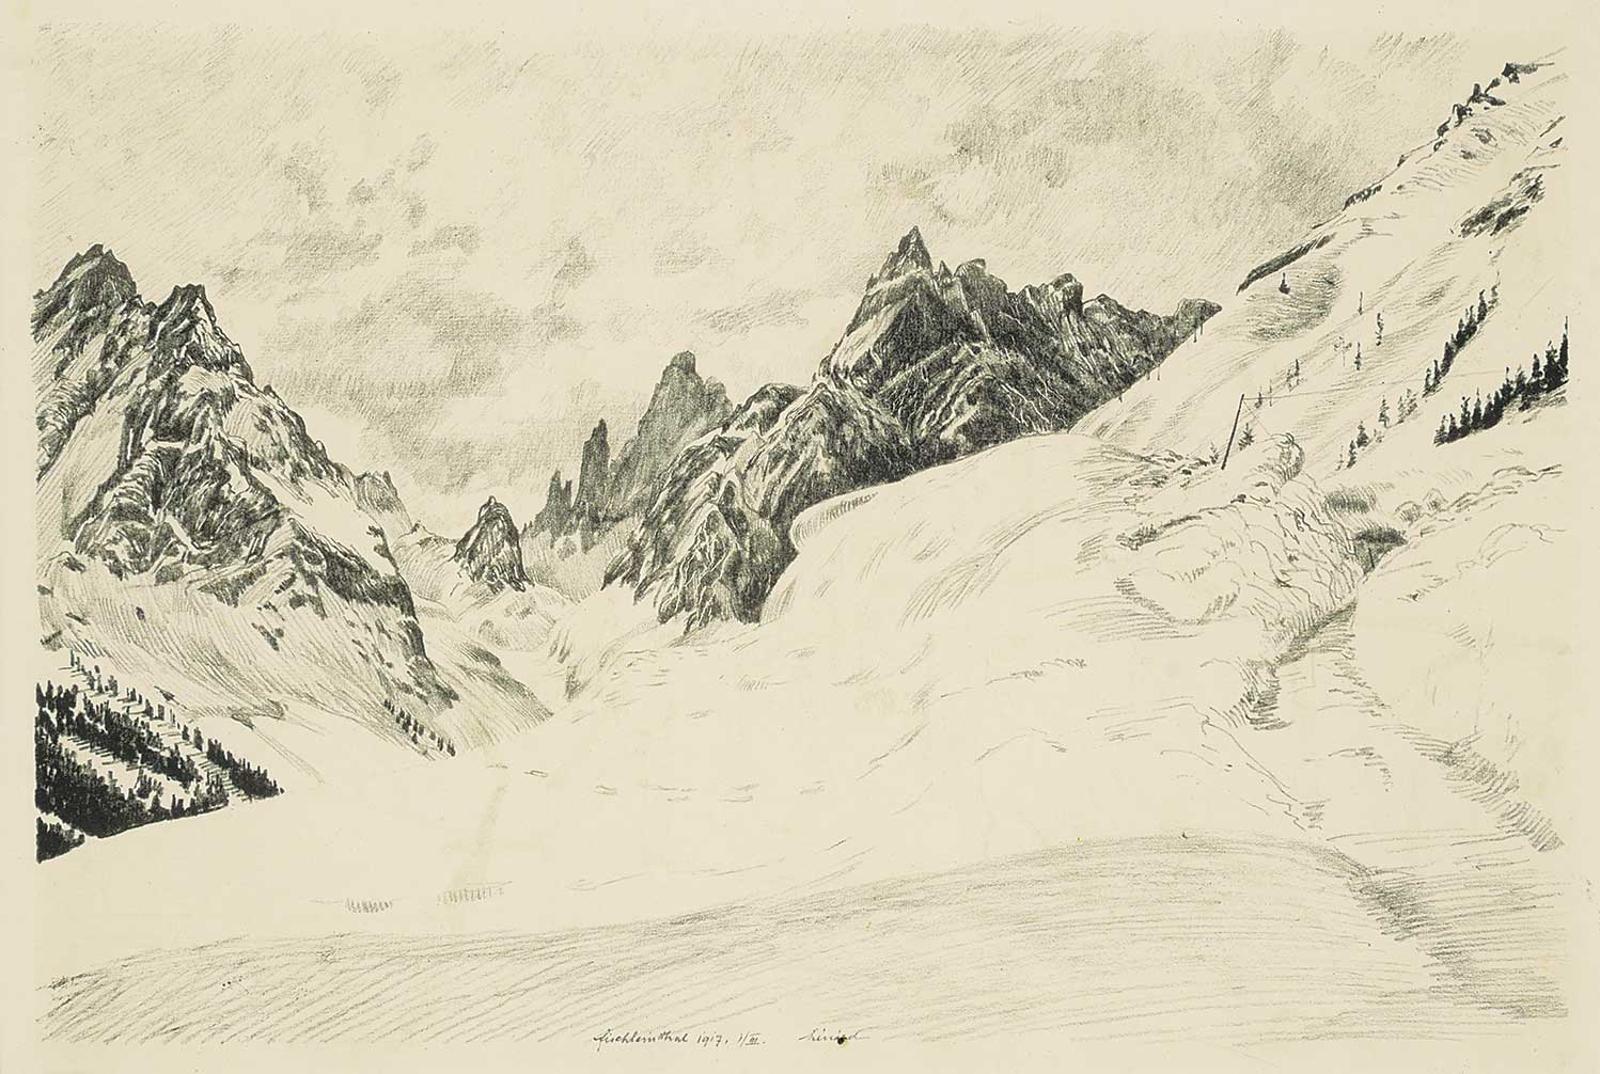 Robert Lenard (1879-1936) - Fischteinthal, Switzerland